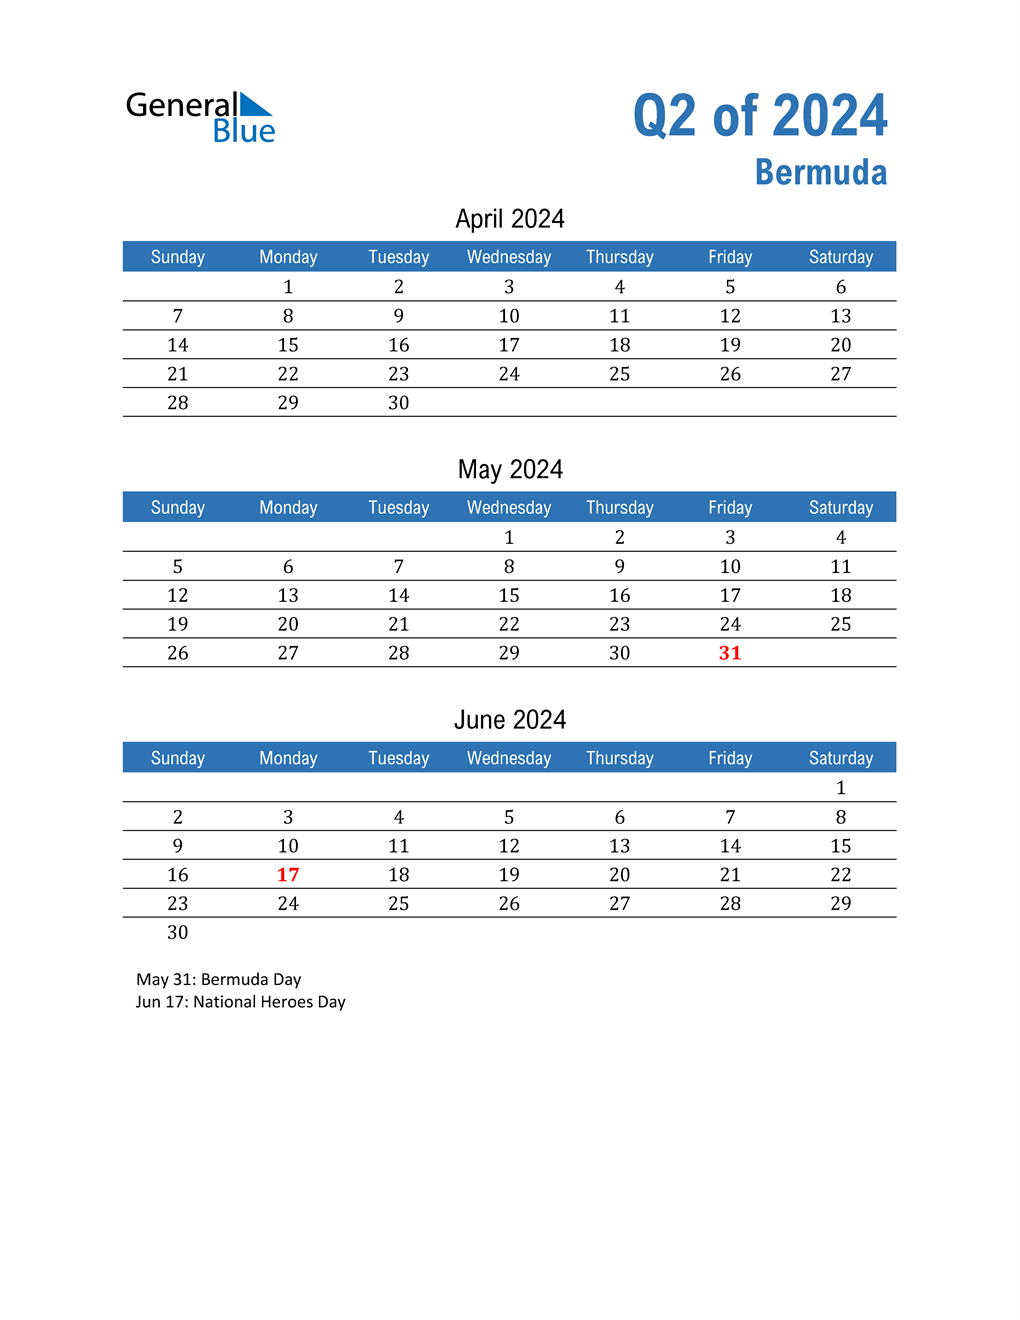 Q2 2024 Quarterly Calendar for Bermuda